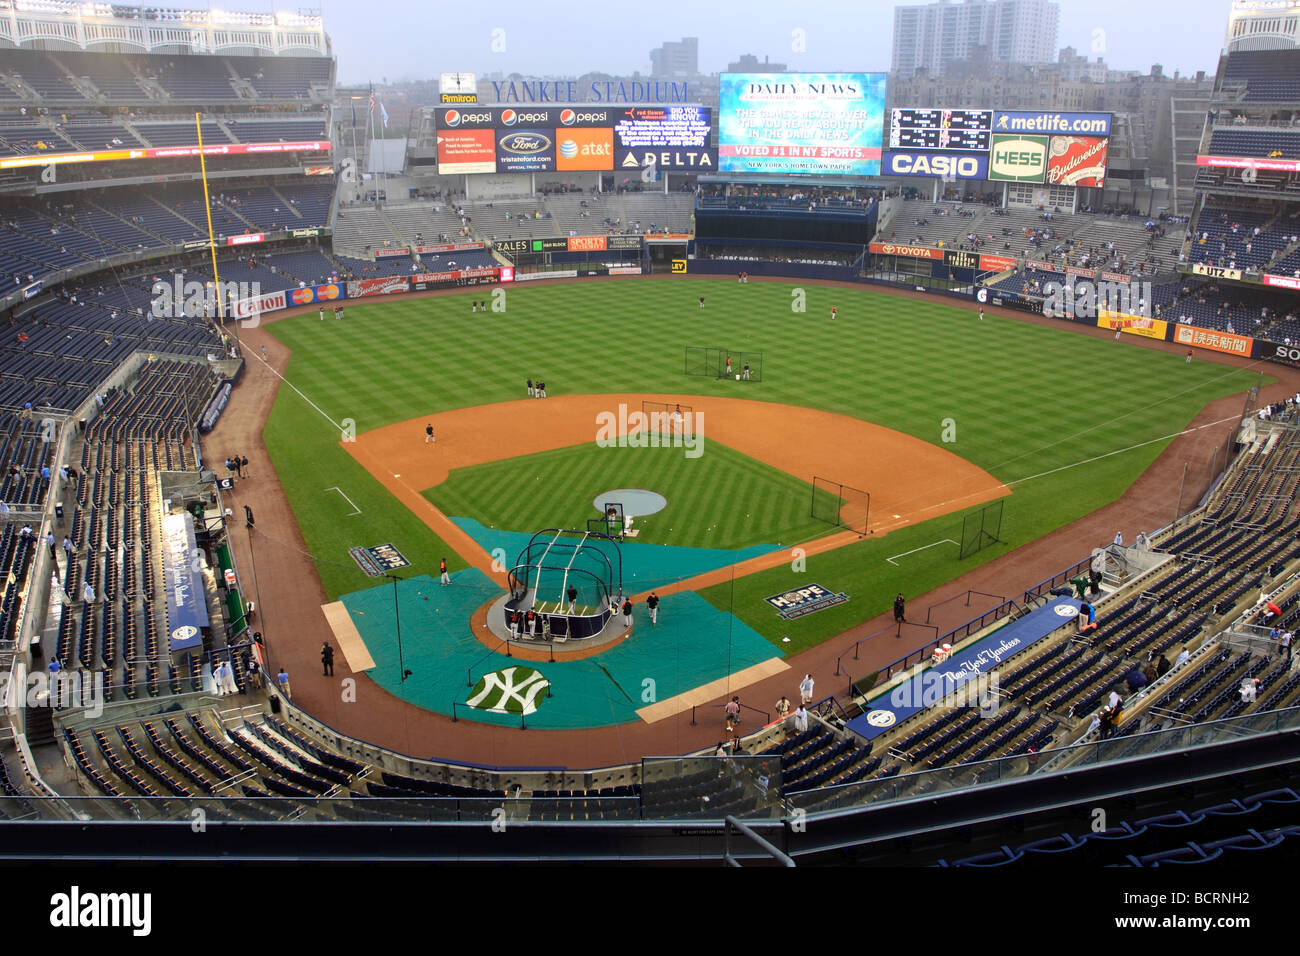 Pre game batting practice at the new Yankee Stadium Bronx New York USA Stock Photo